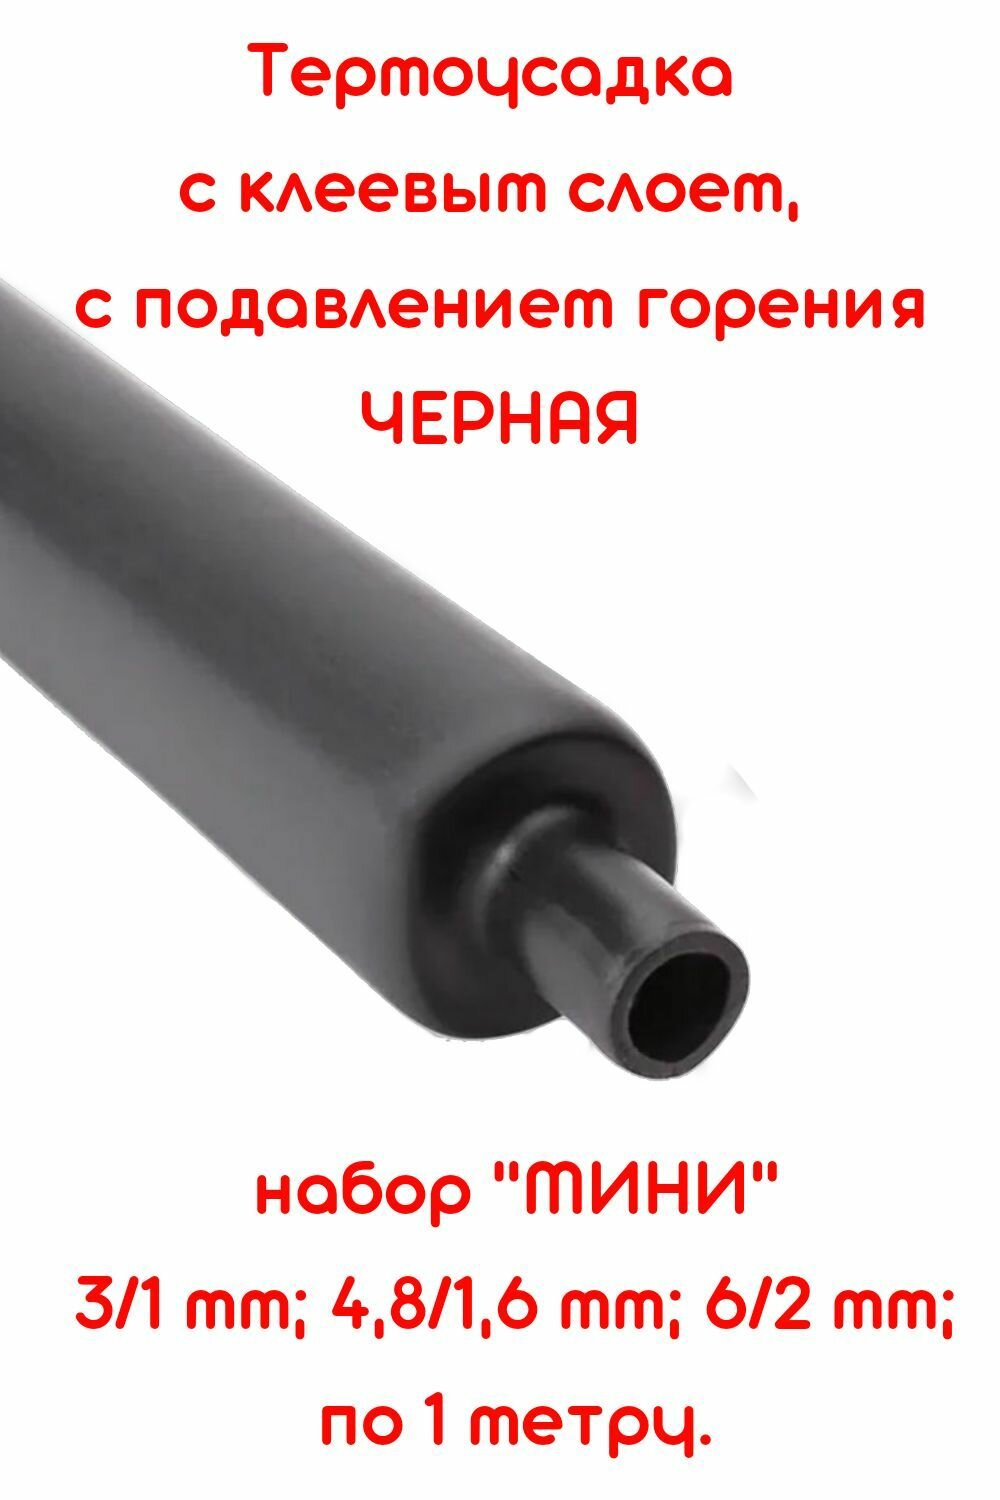 Набор клеевой термоусадки мини 3/1 мм4.8/1.6 мм 6/2 мм ПО 1М. ТТК(3:1) с подавлением горения